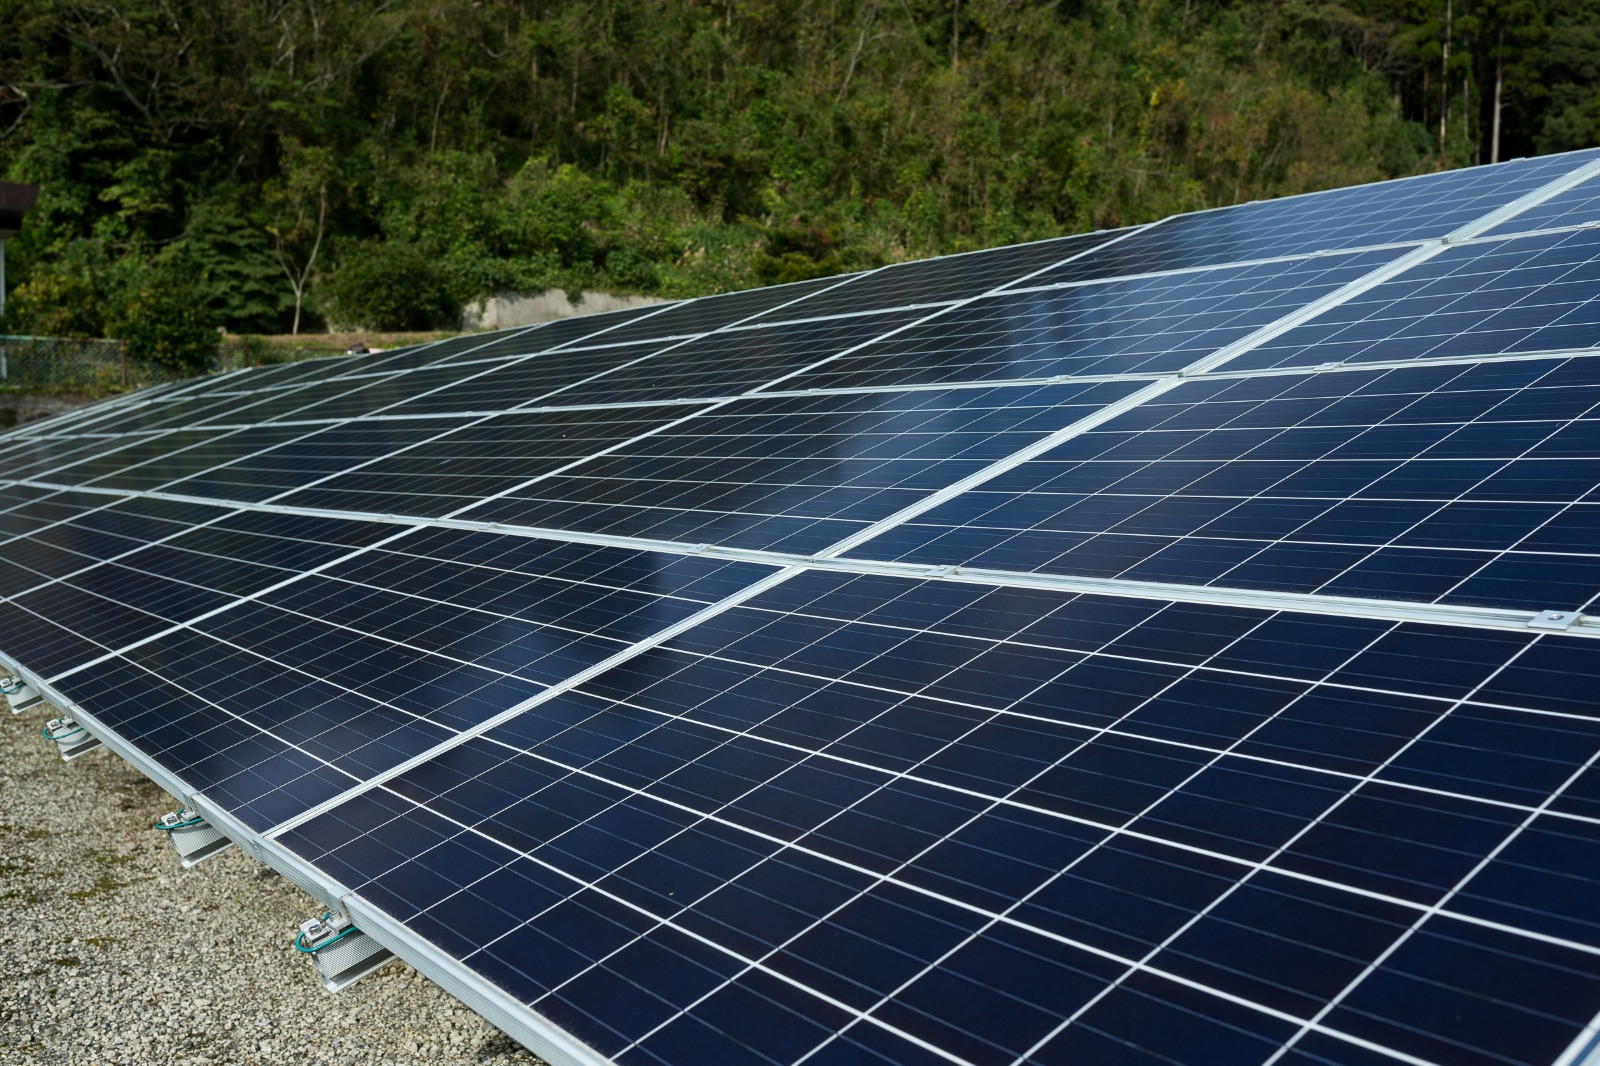 Instalação de energia solar: qual o melhor local para colocar as placas? - Ecosol